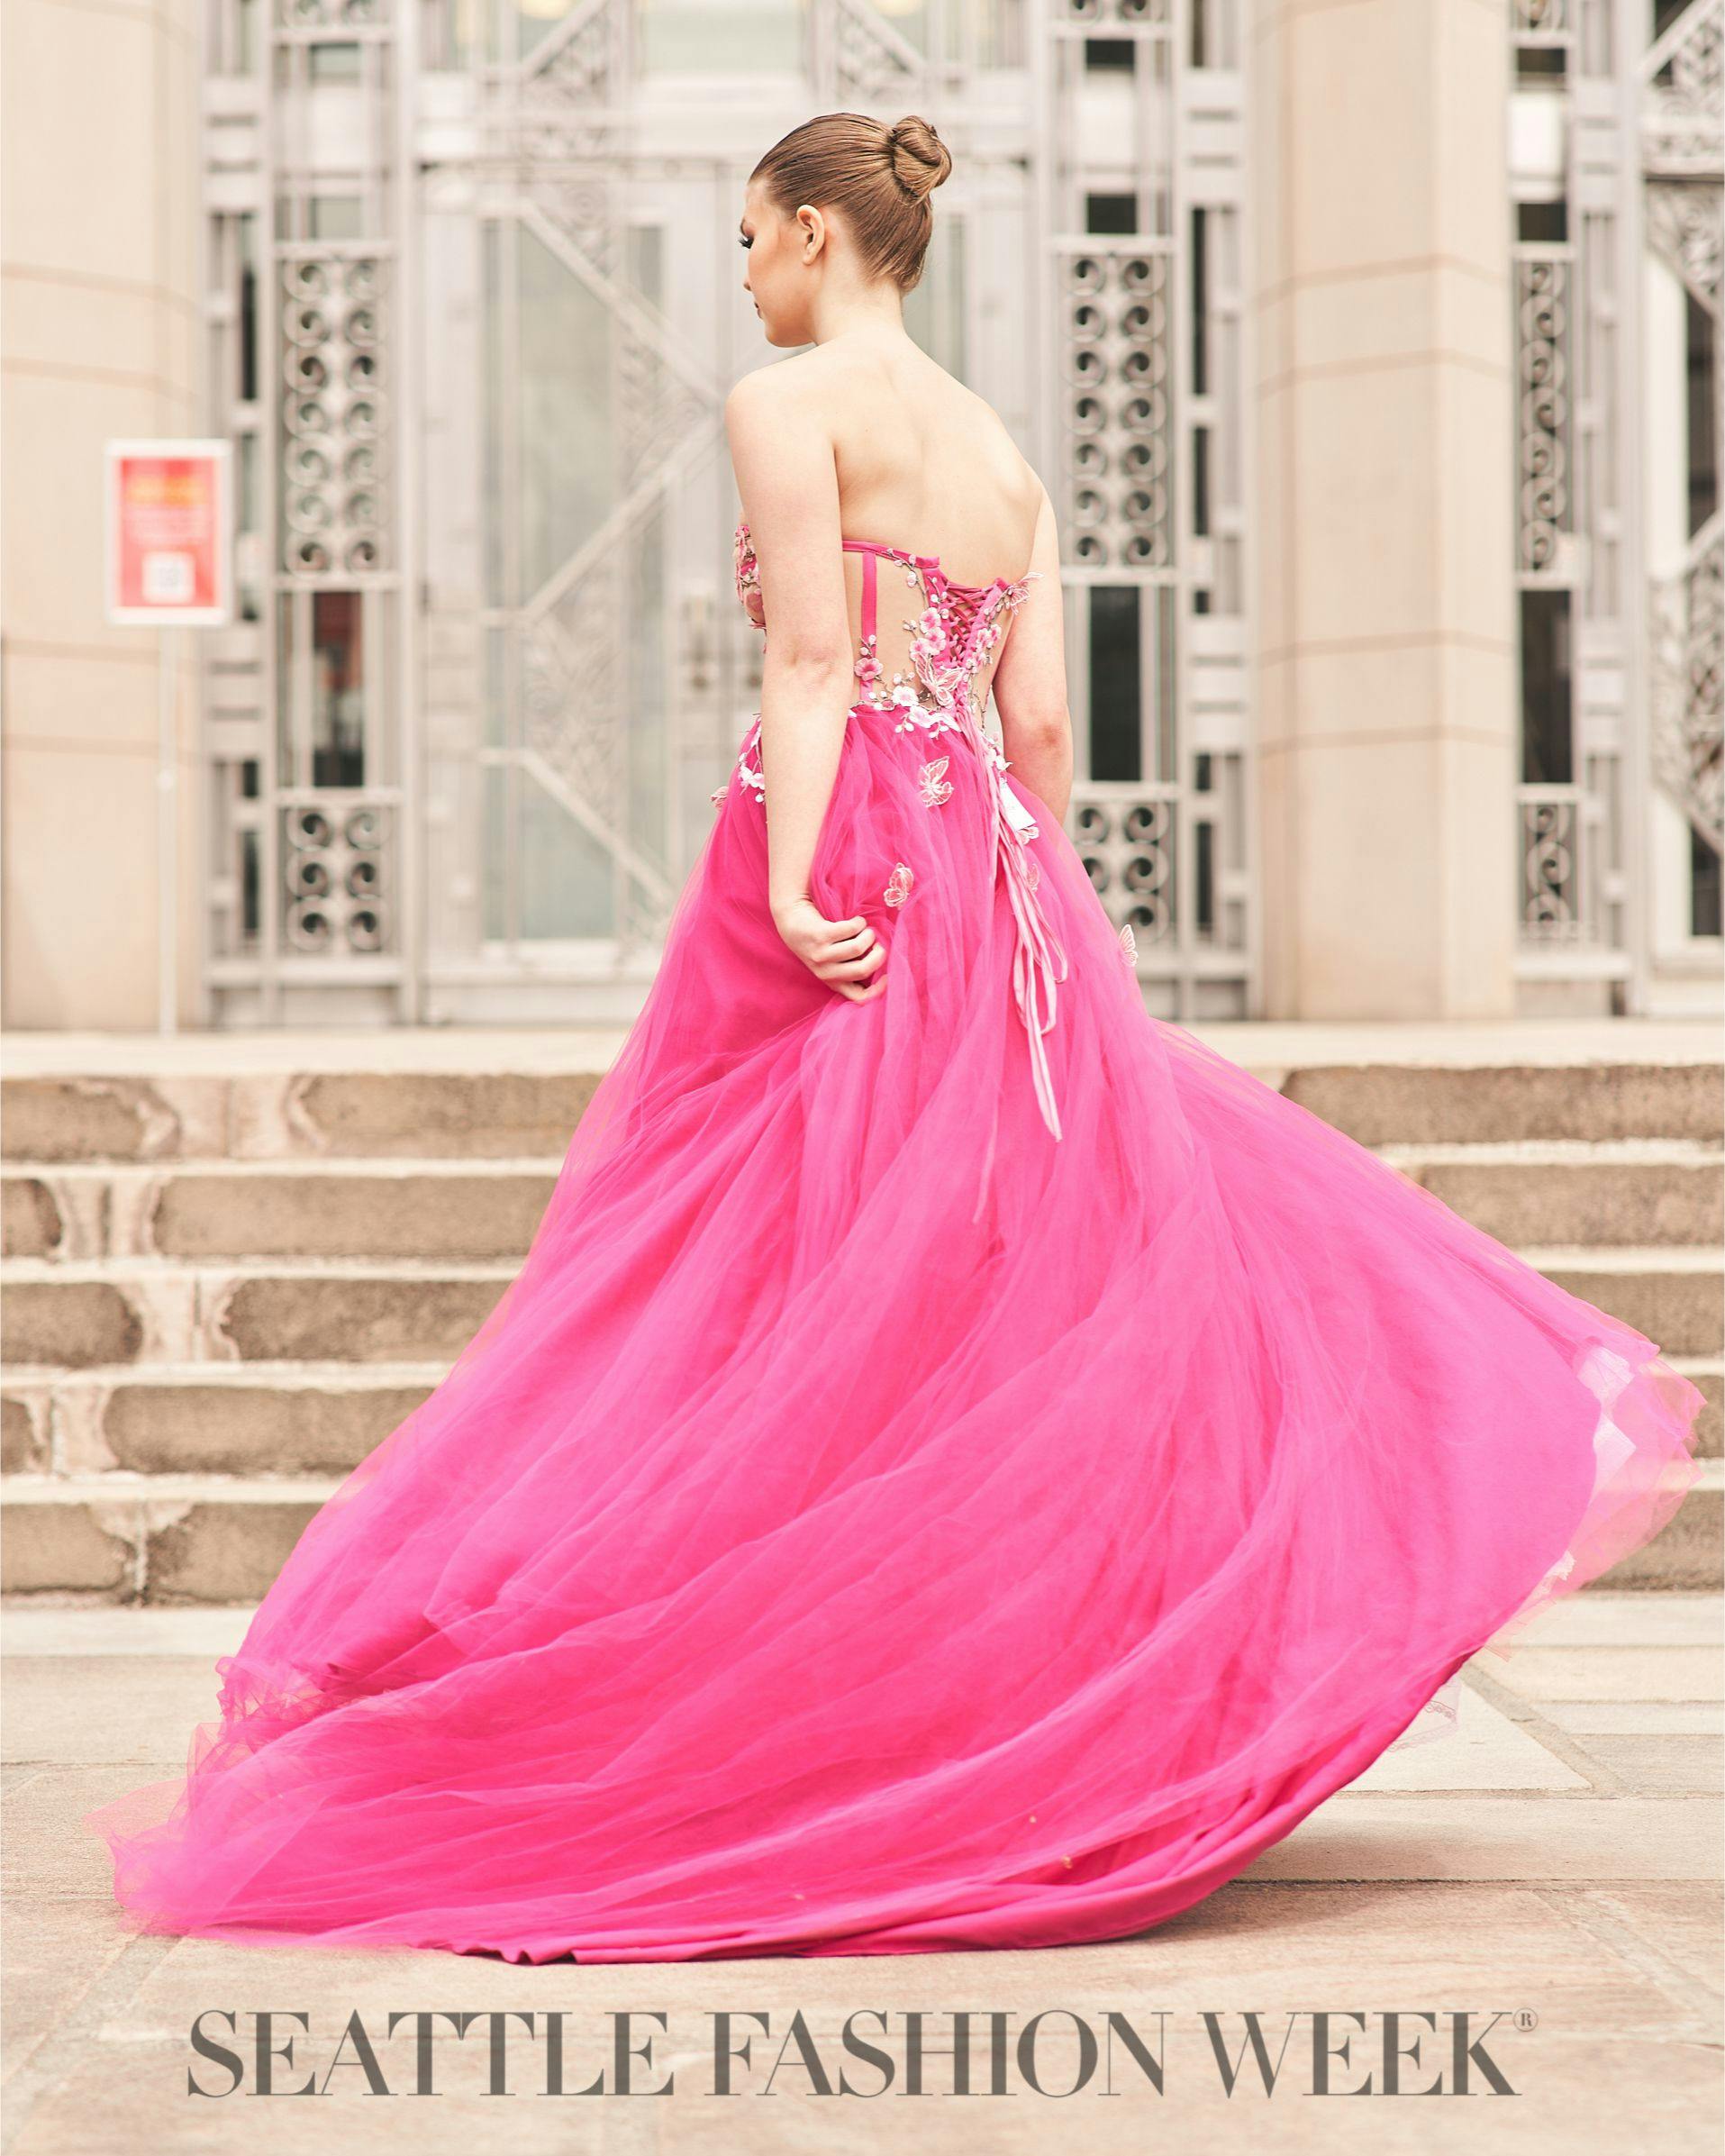 Woman in pink dress Seattle Fashion Week